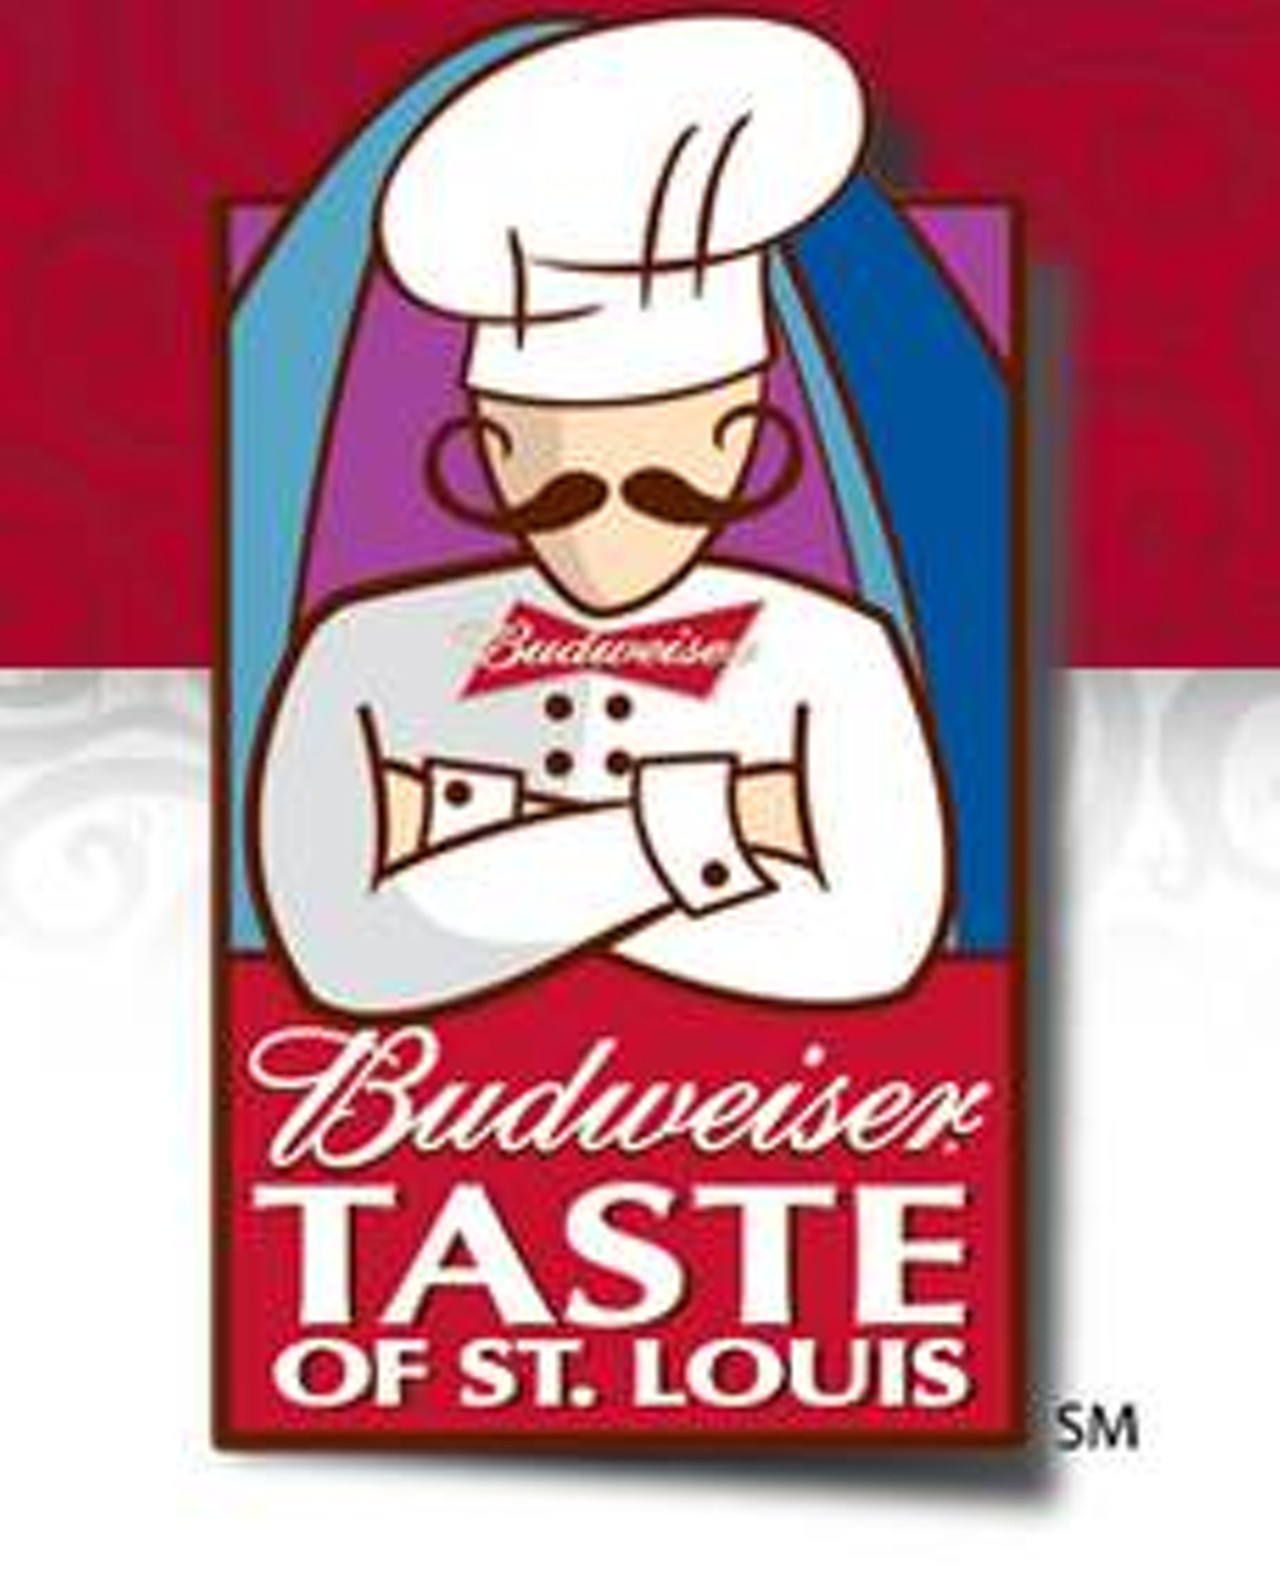 Taste of St. Louis